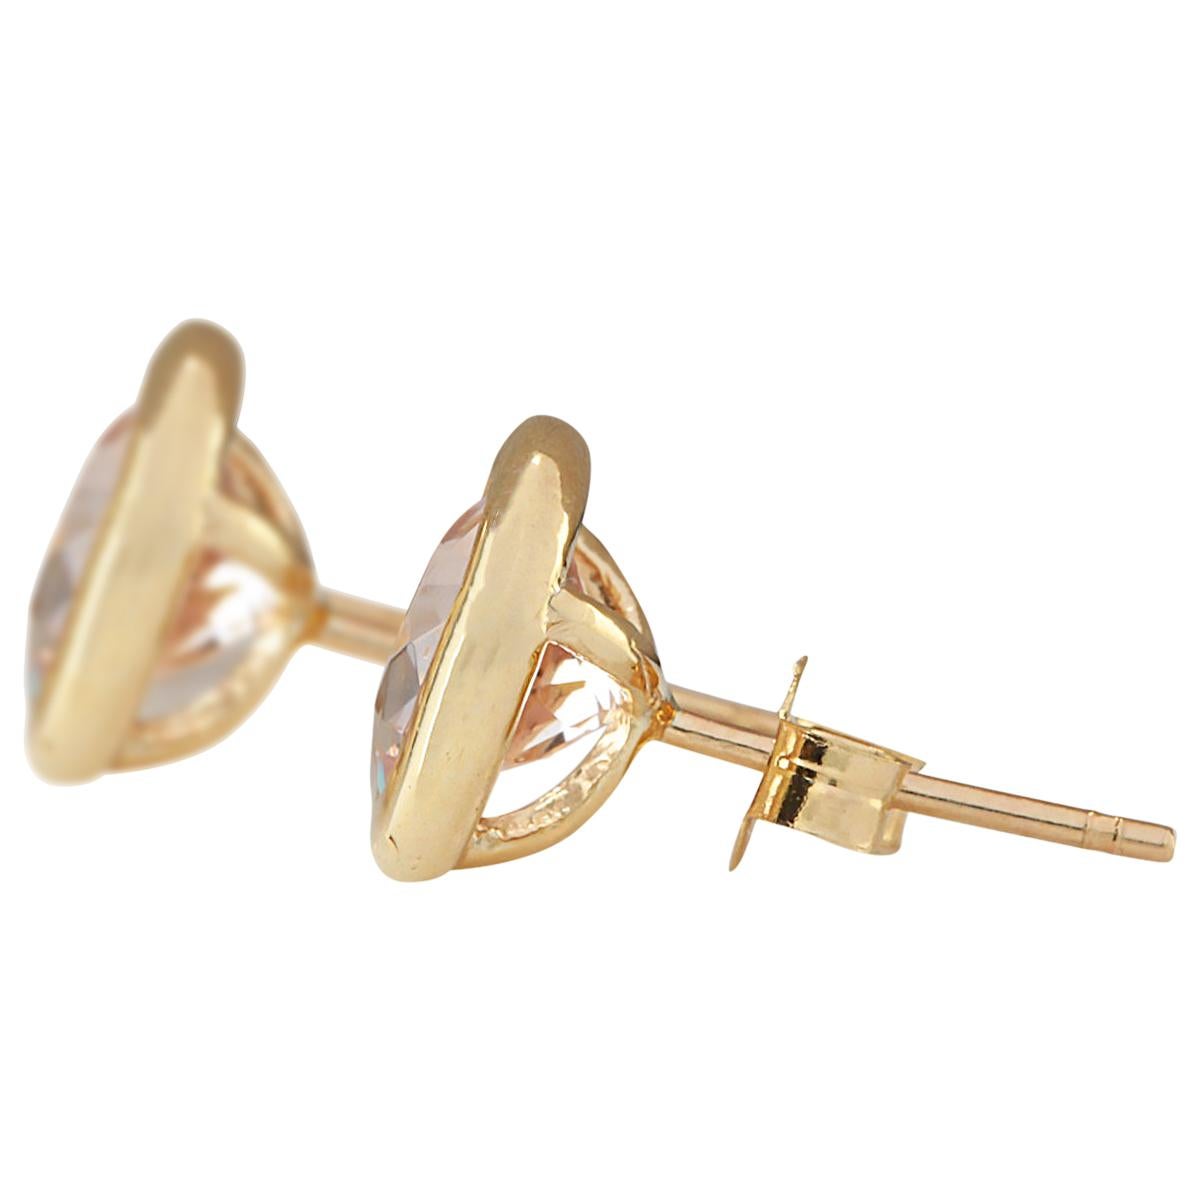 Wir stellen Ihnen unsere atemberaubenden Ohrringe mit 3,00 Karat natürlichem Morganit vor, die elegant in 14-karätigem Gelbgold gefertigt sind. Jeder Ohrring trägt den authentischen 14K-Stempel und wiegt insgesamt 1,7 Gramm, was sowohl Stil als auch